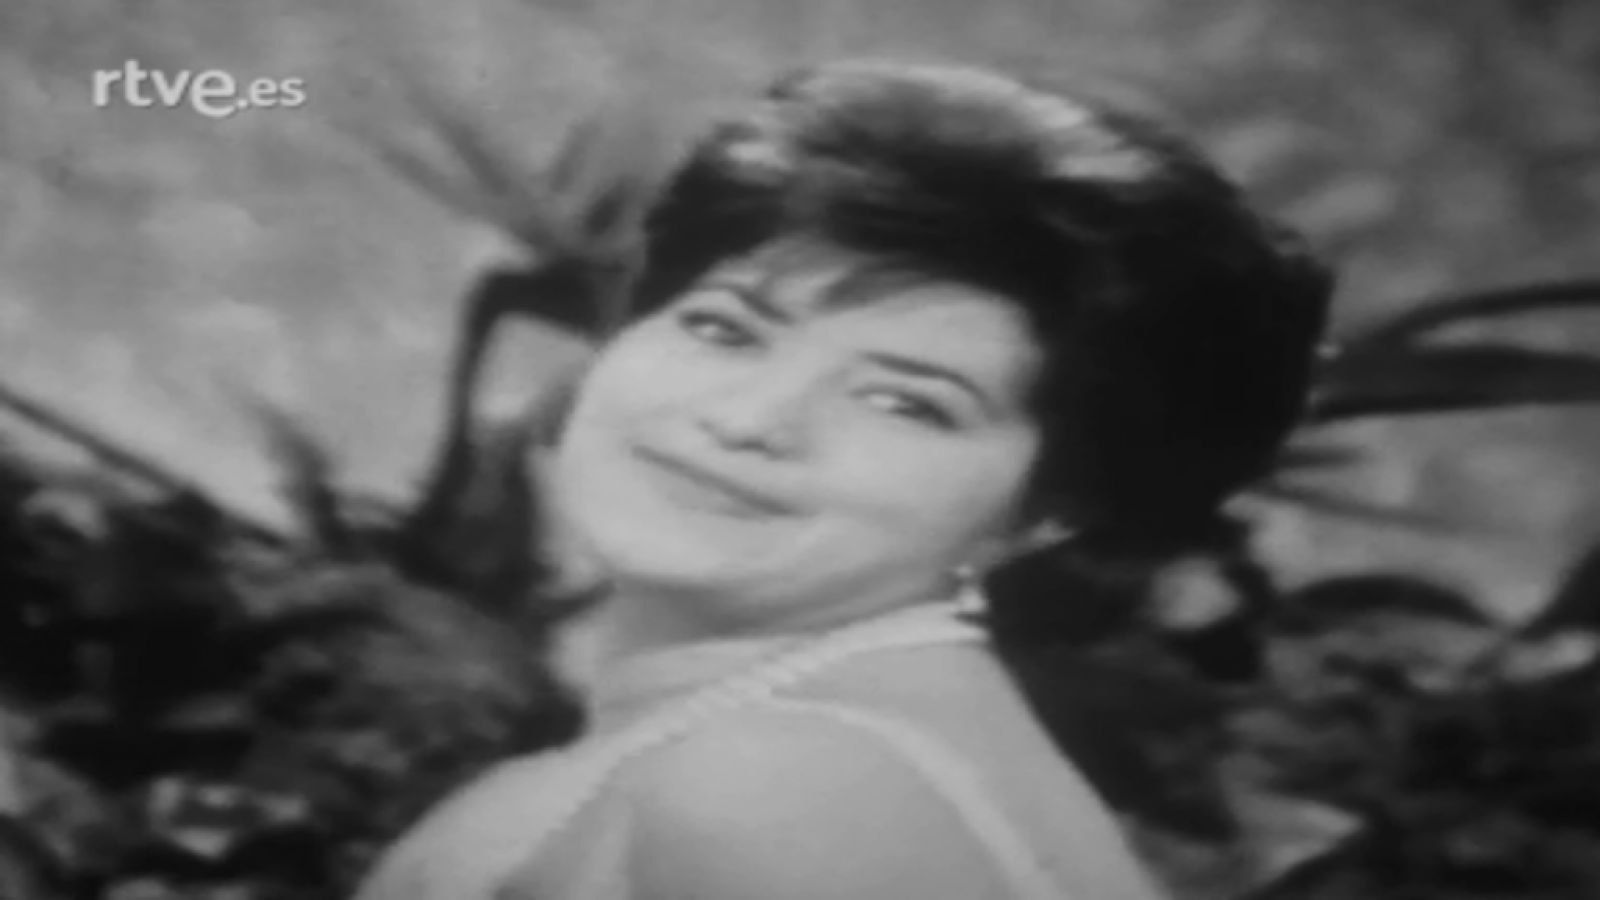 Festival de Eurovisión 1961 - Conchita Bautista - Estando contigo